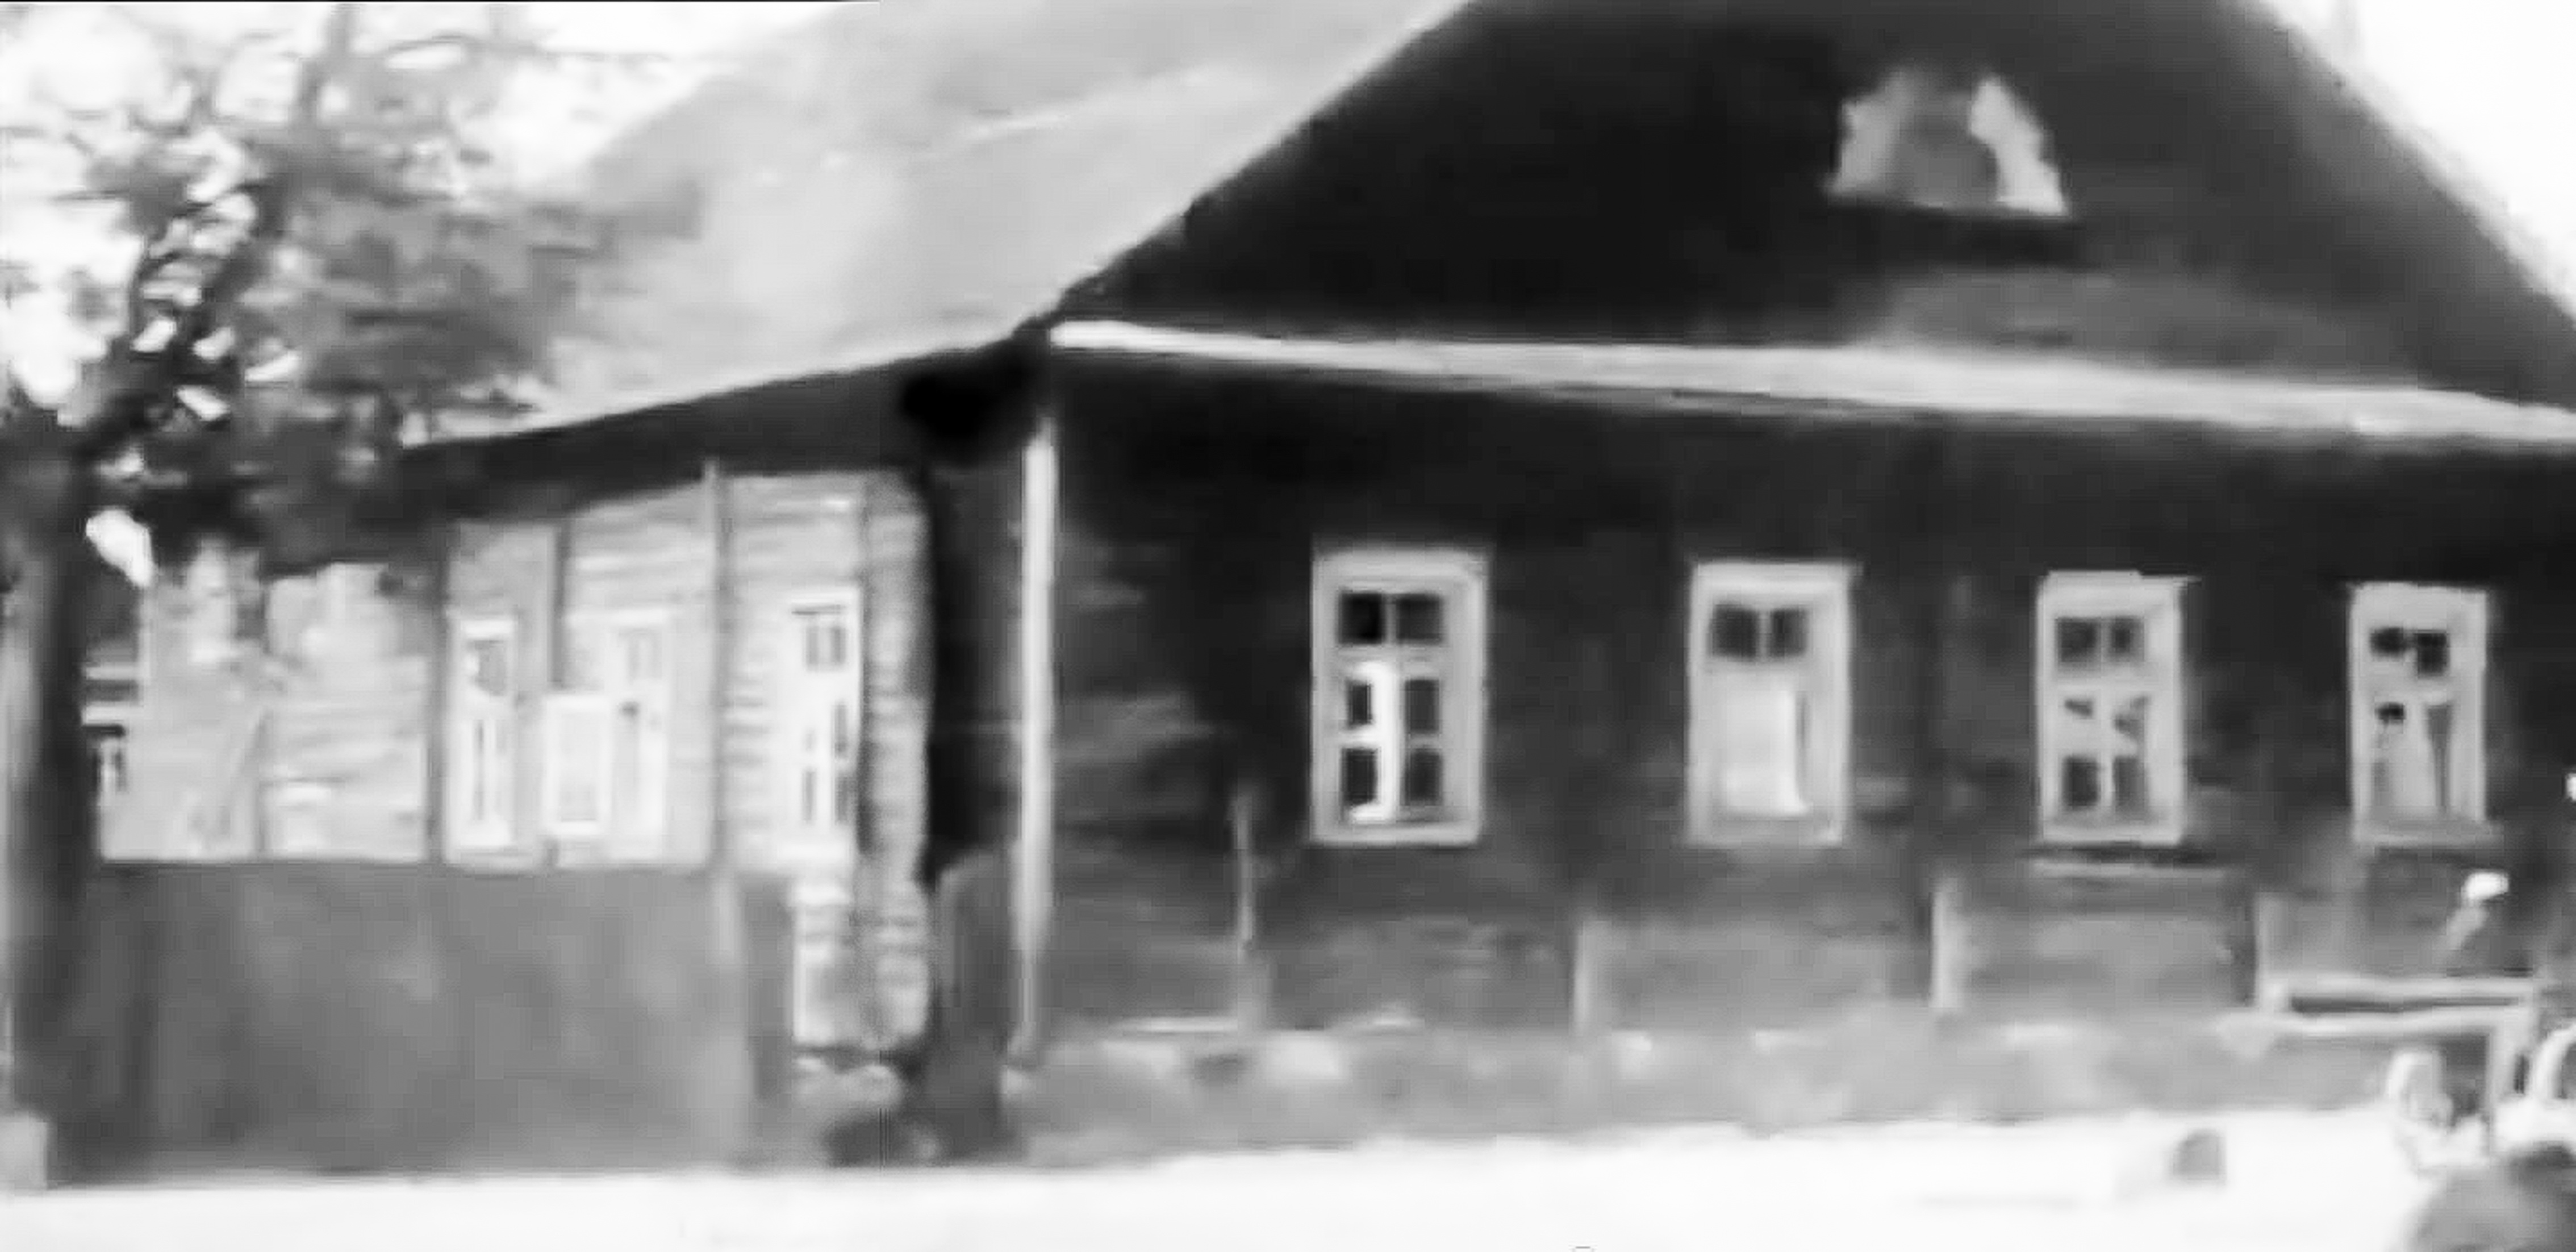 Rokiškio didžioji sinagoga, vadinta Raudonąja. Iškarpa iš filmo „Trip to Lithuania“, 1938 metai.